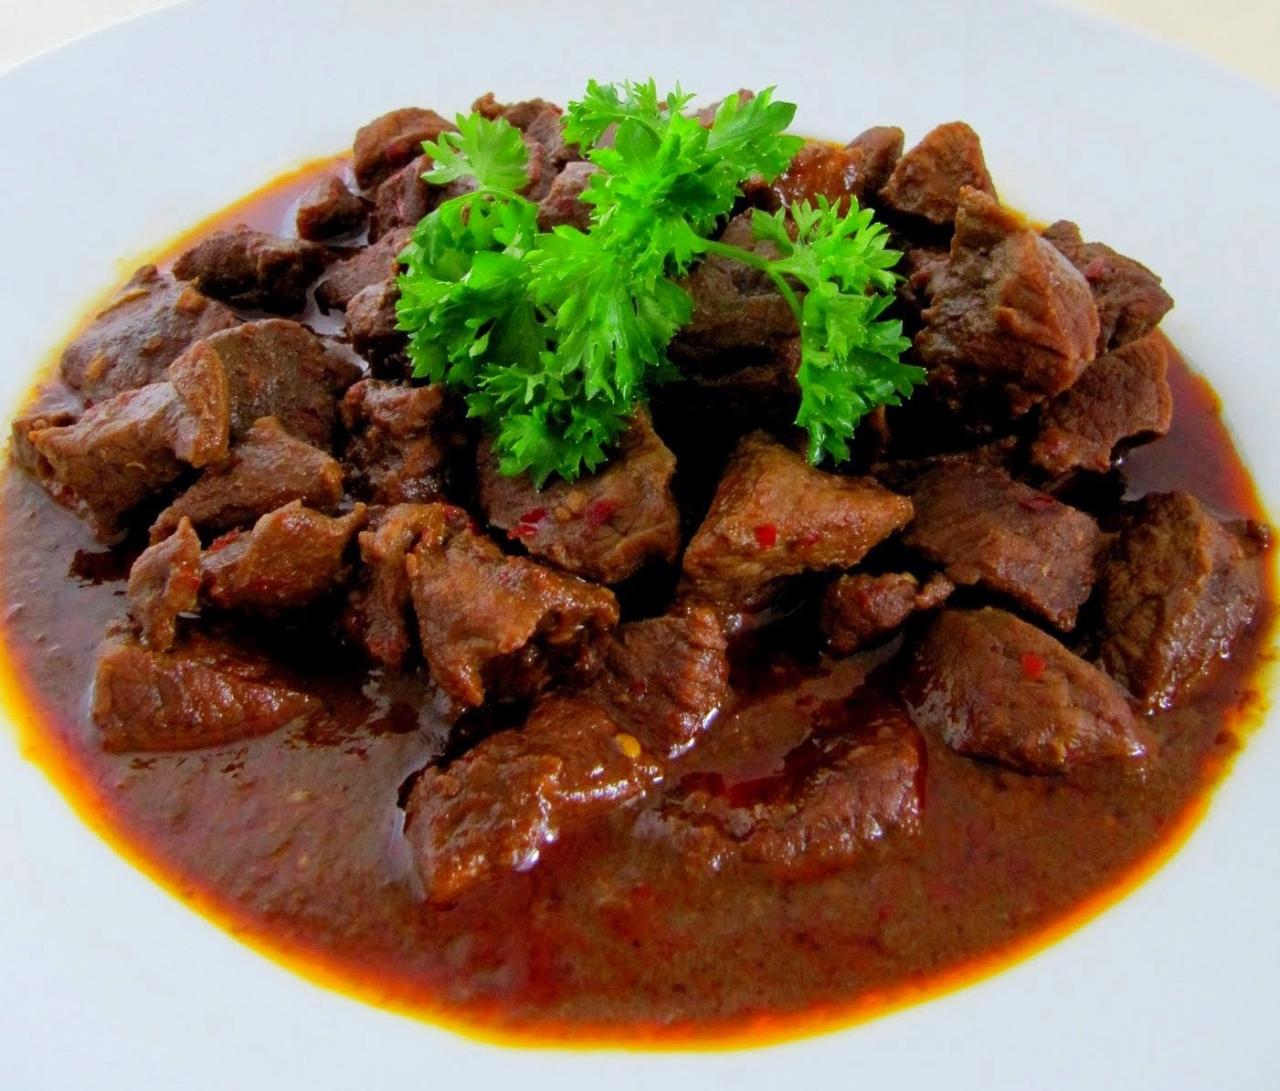 Rendang daging makanan masakan resep travistory minangkabau macam khas dunia barat sumatera terenak randang asal asli mula luar minang maknyus